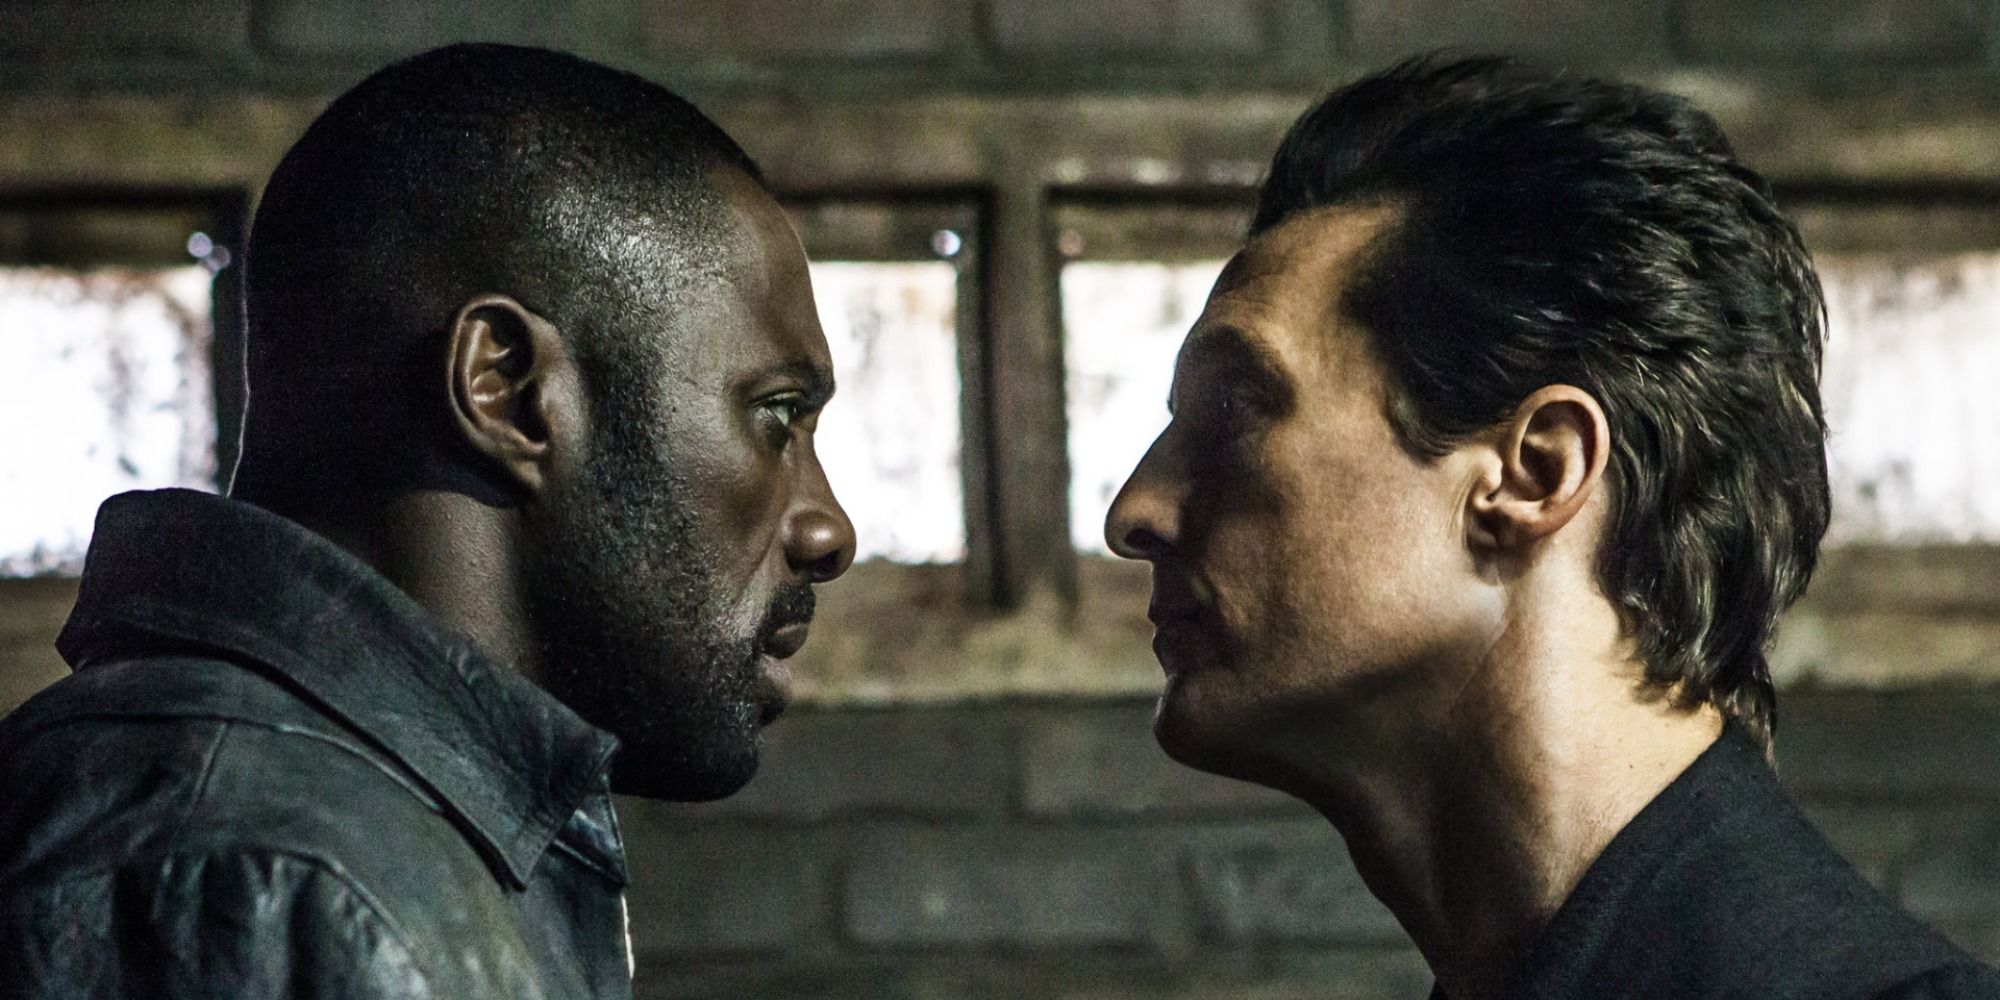 Idris Elba and Matthew McConaughey in The Dark Tower